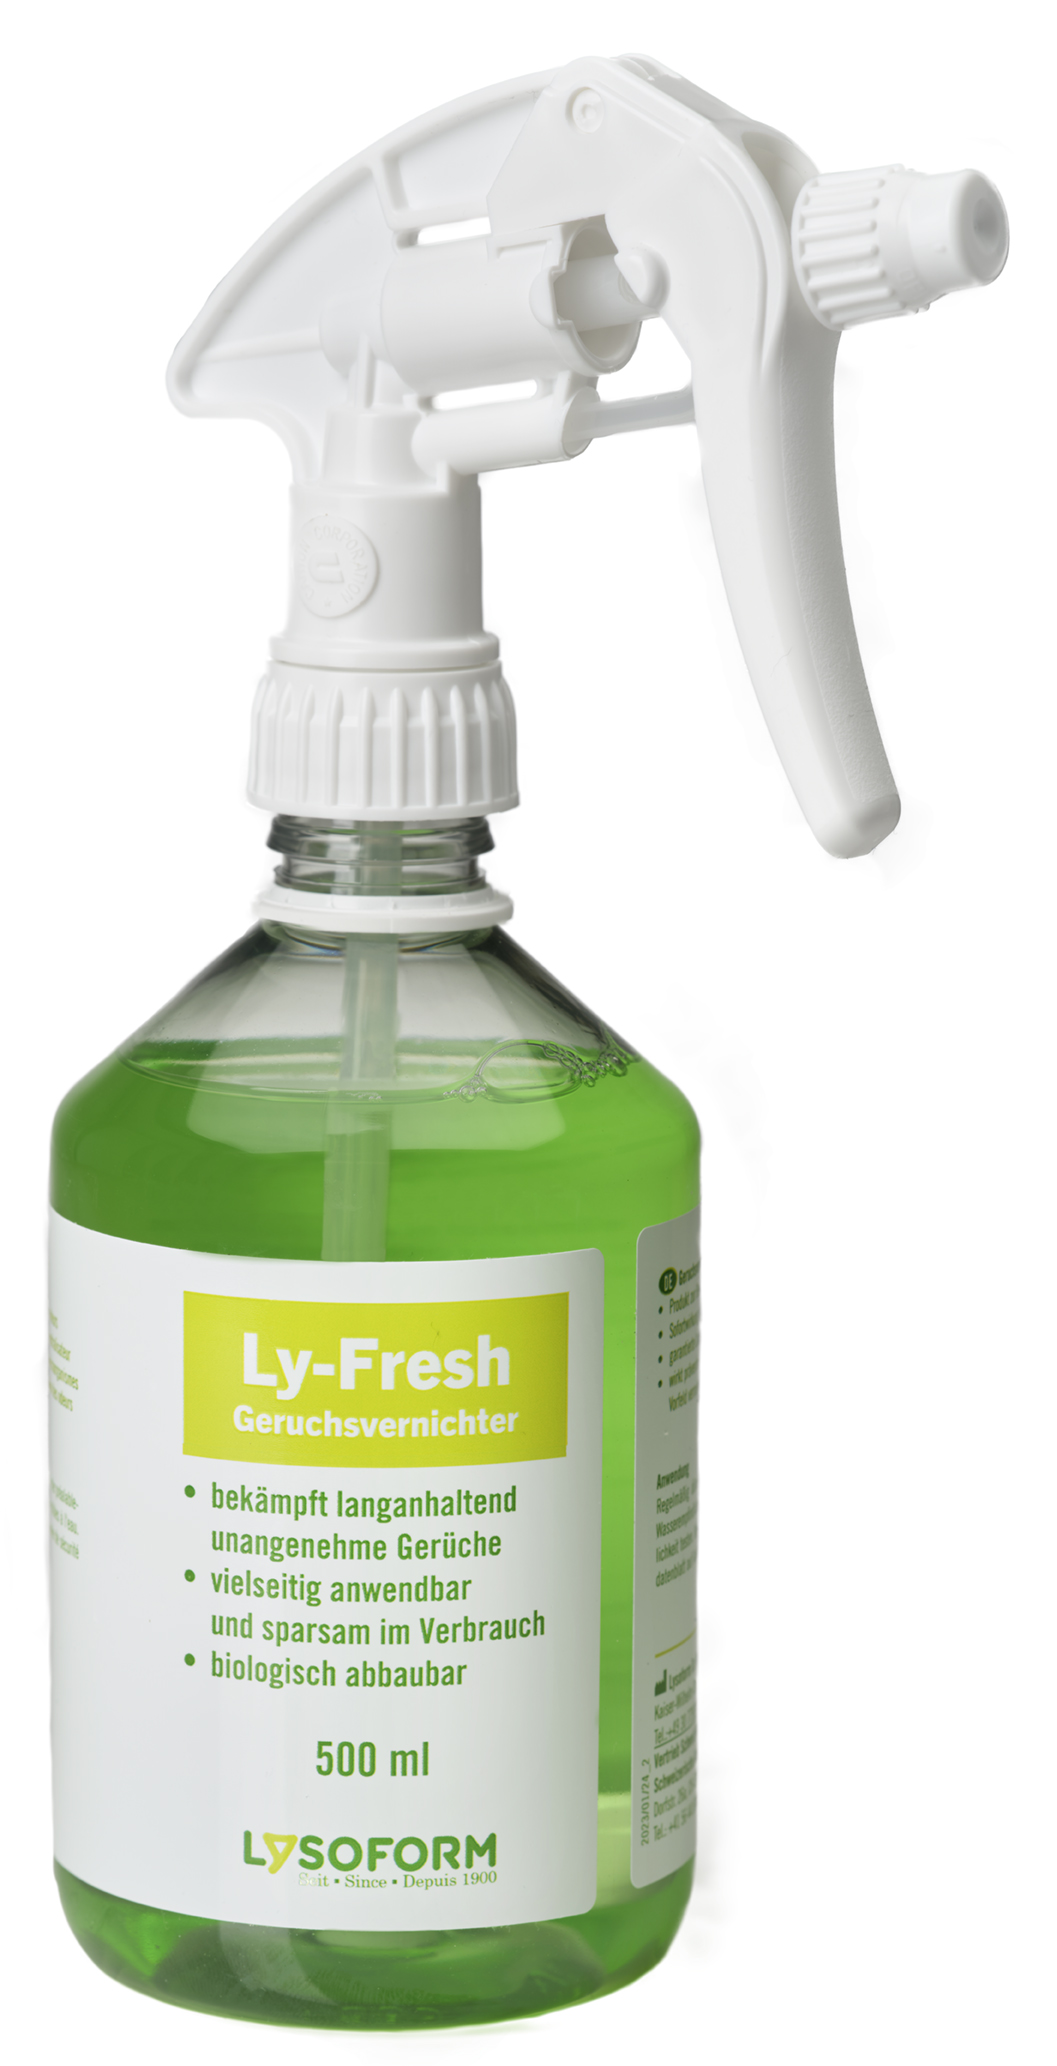 Ly-Fresh Geruchsvernichter mit Sprühkopf, 500 ml